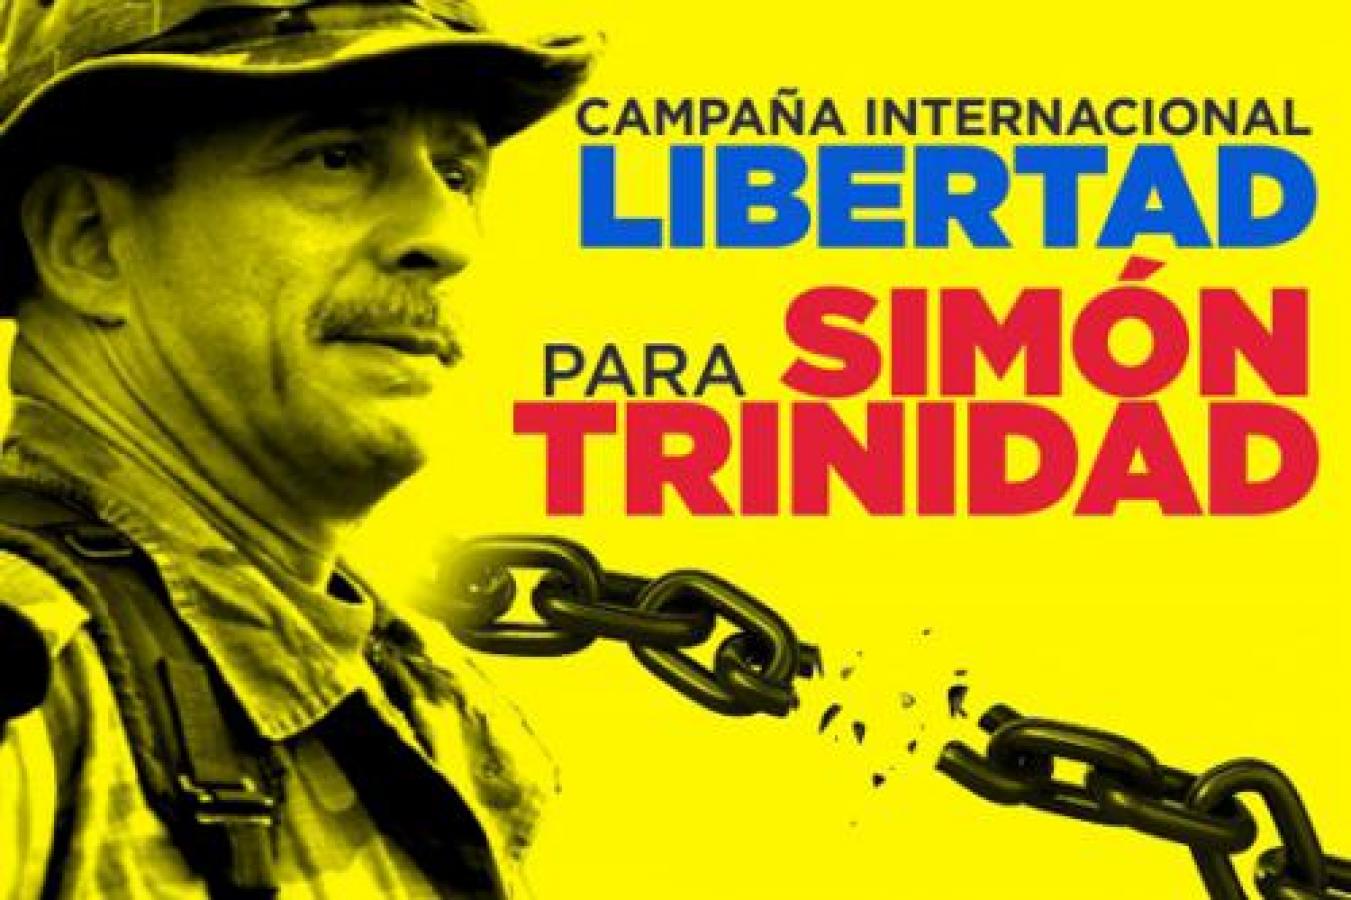 Campaña por la libertad de Simón Trinidad